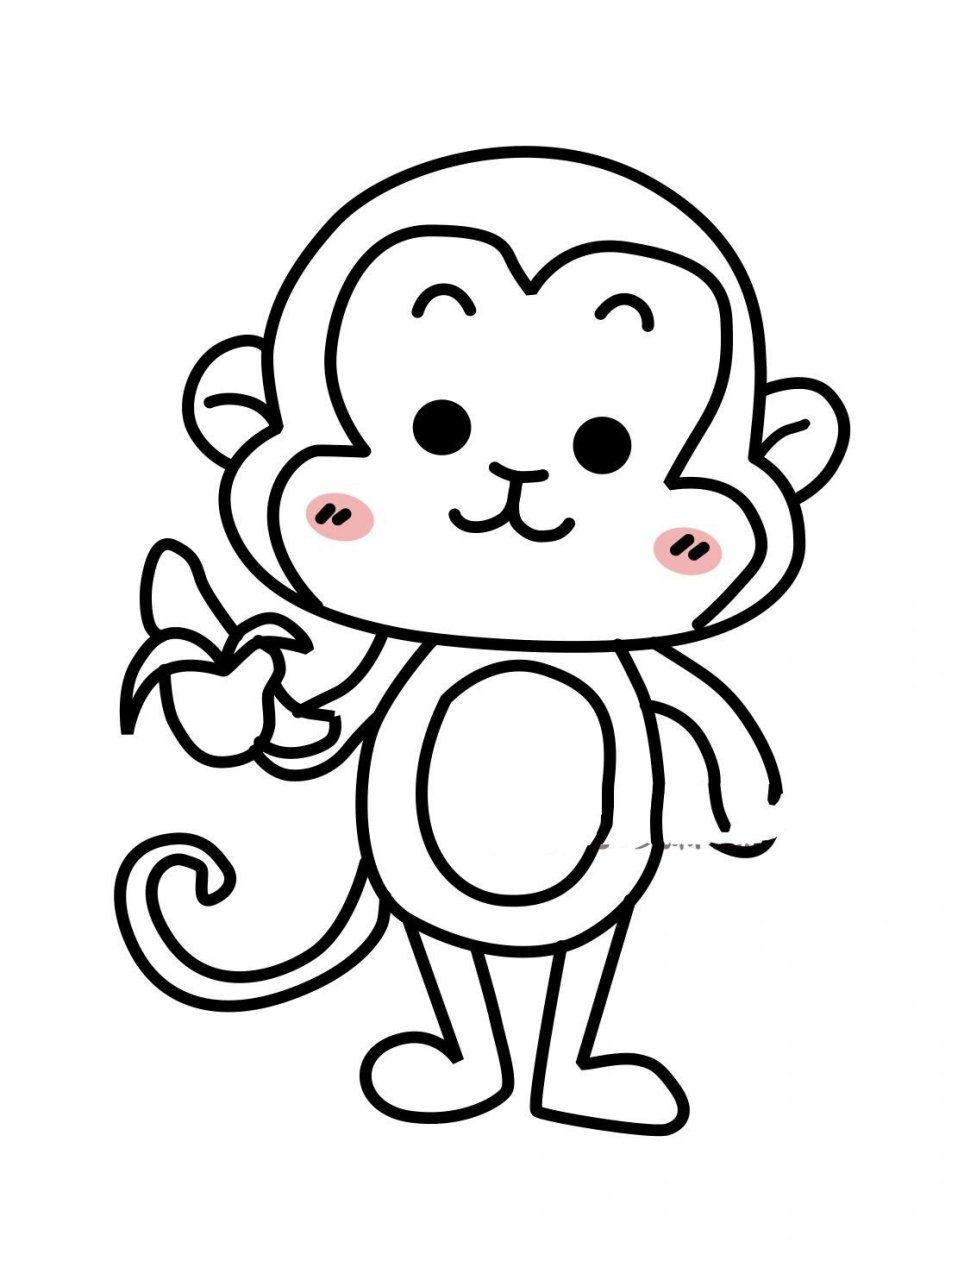 画一只简单小猴子图片